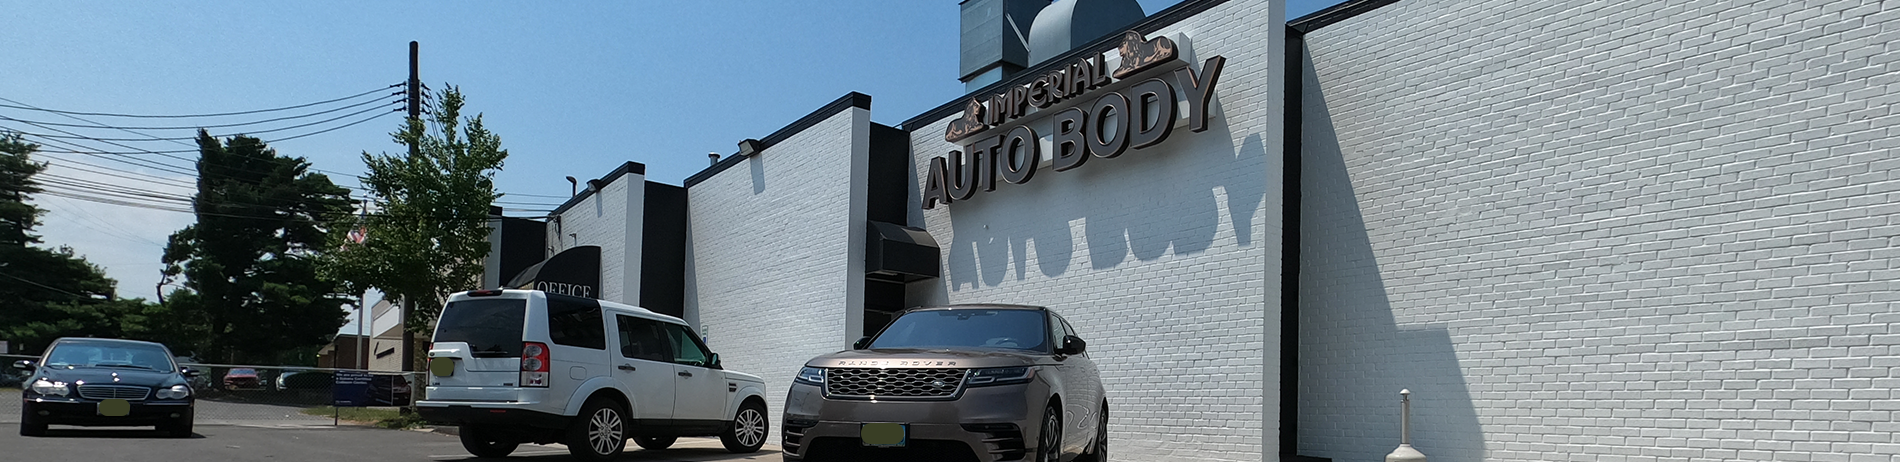 Imperial Auto Body Shop Rockville